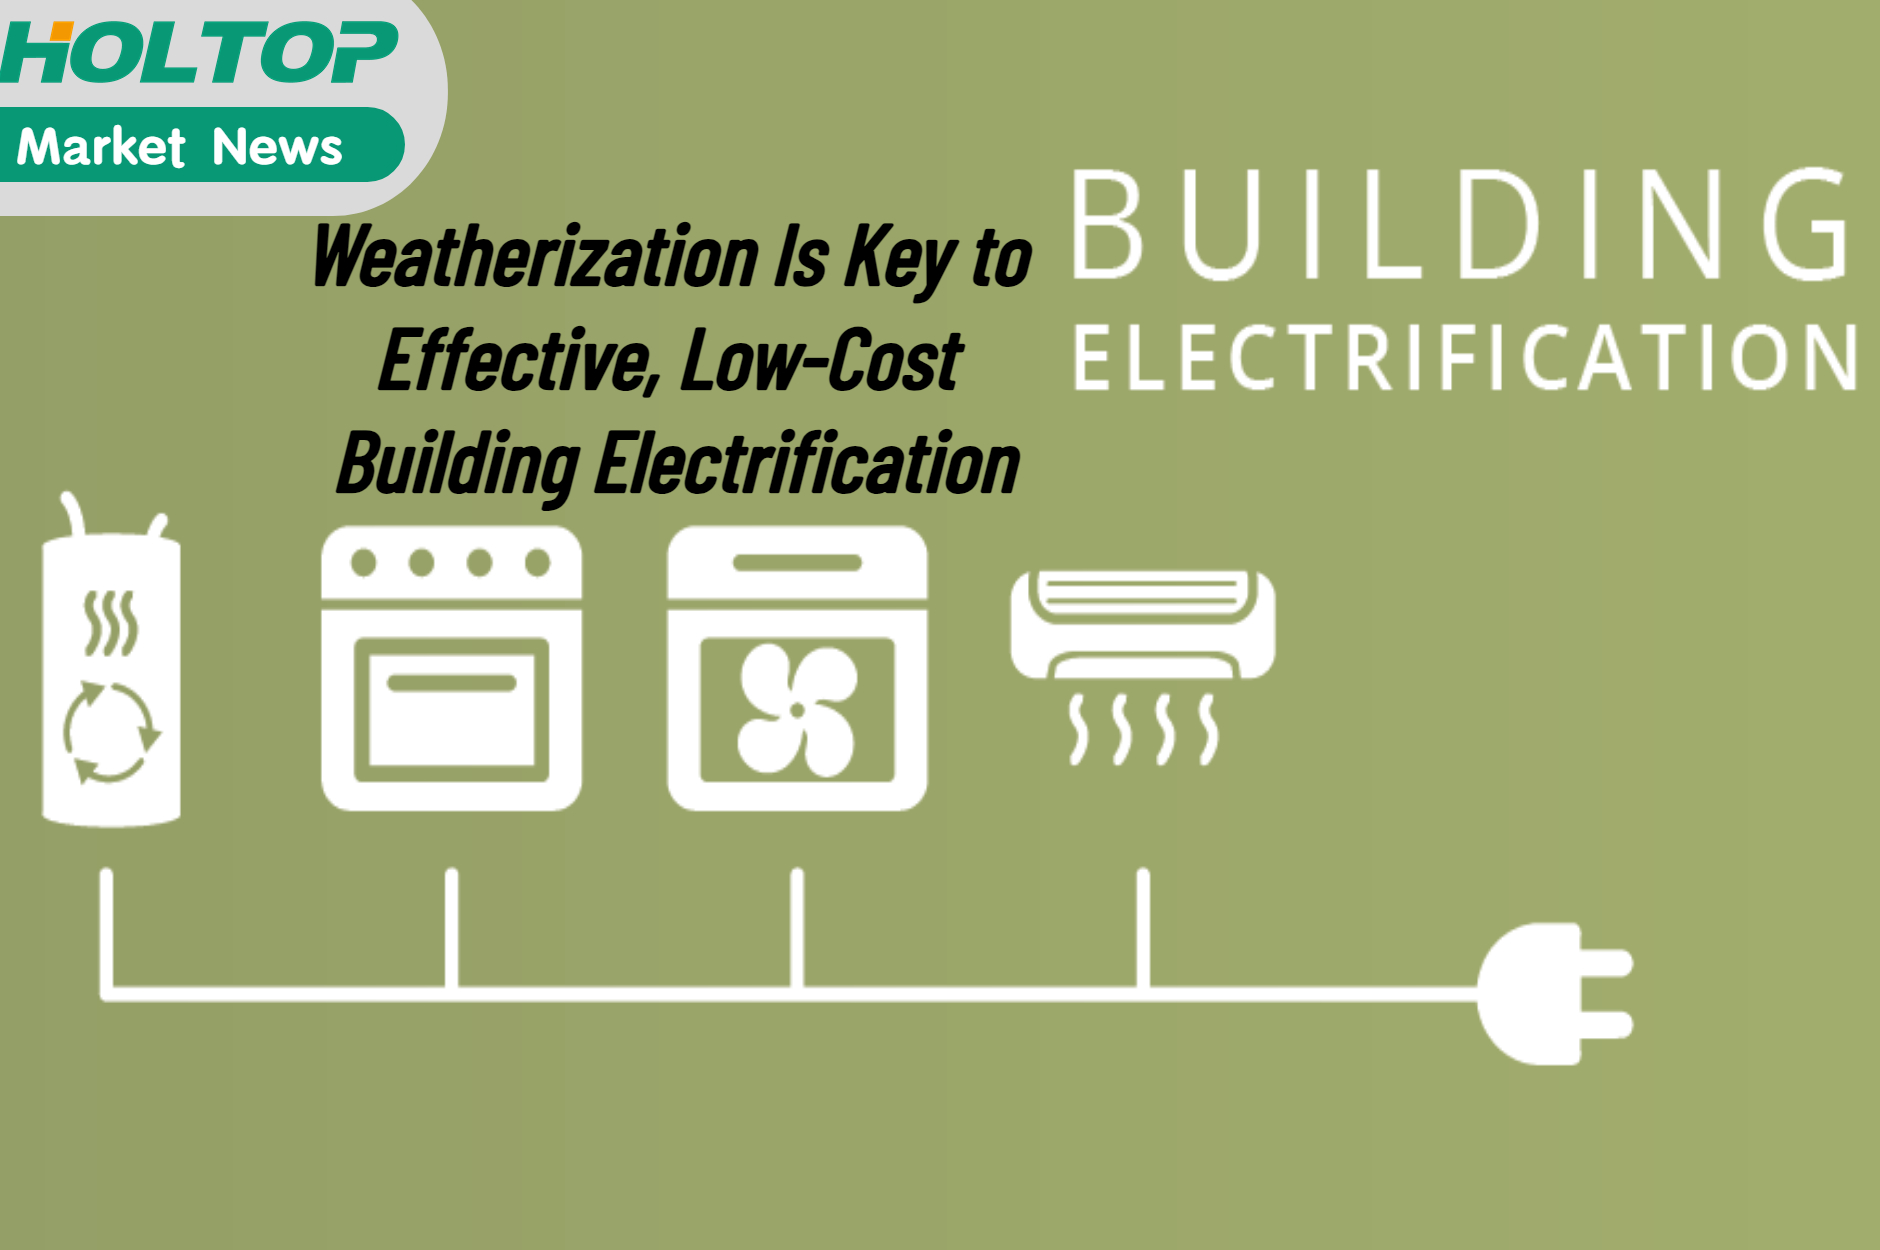 L'intempérisation est la clé d'une électrification efficace et à faible coût des bâtiments